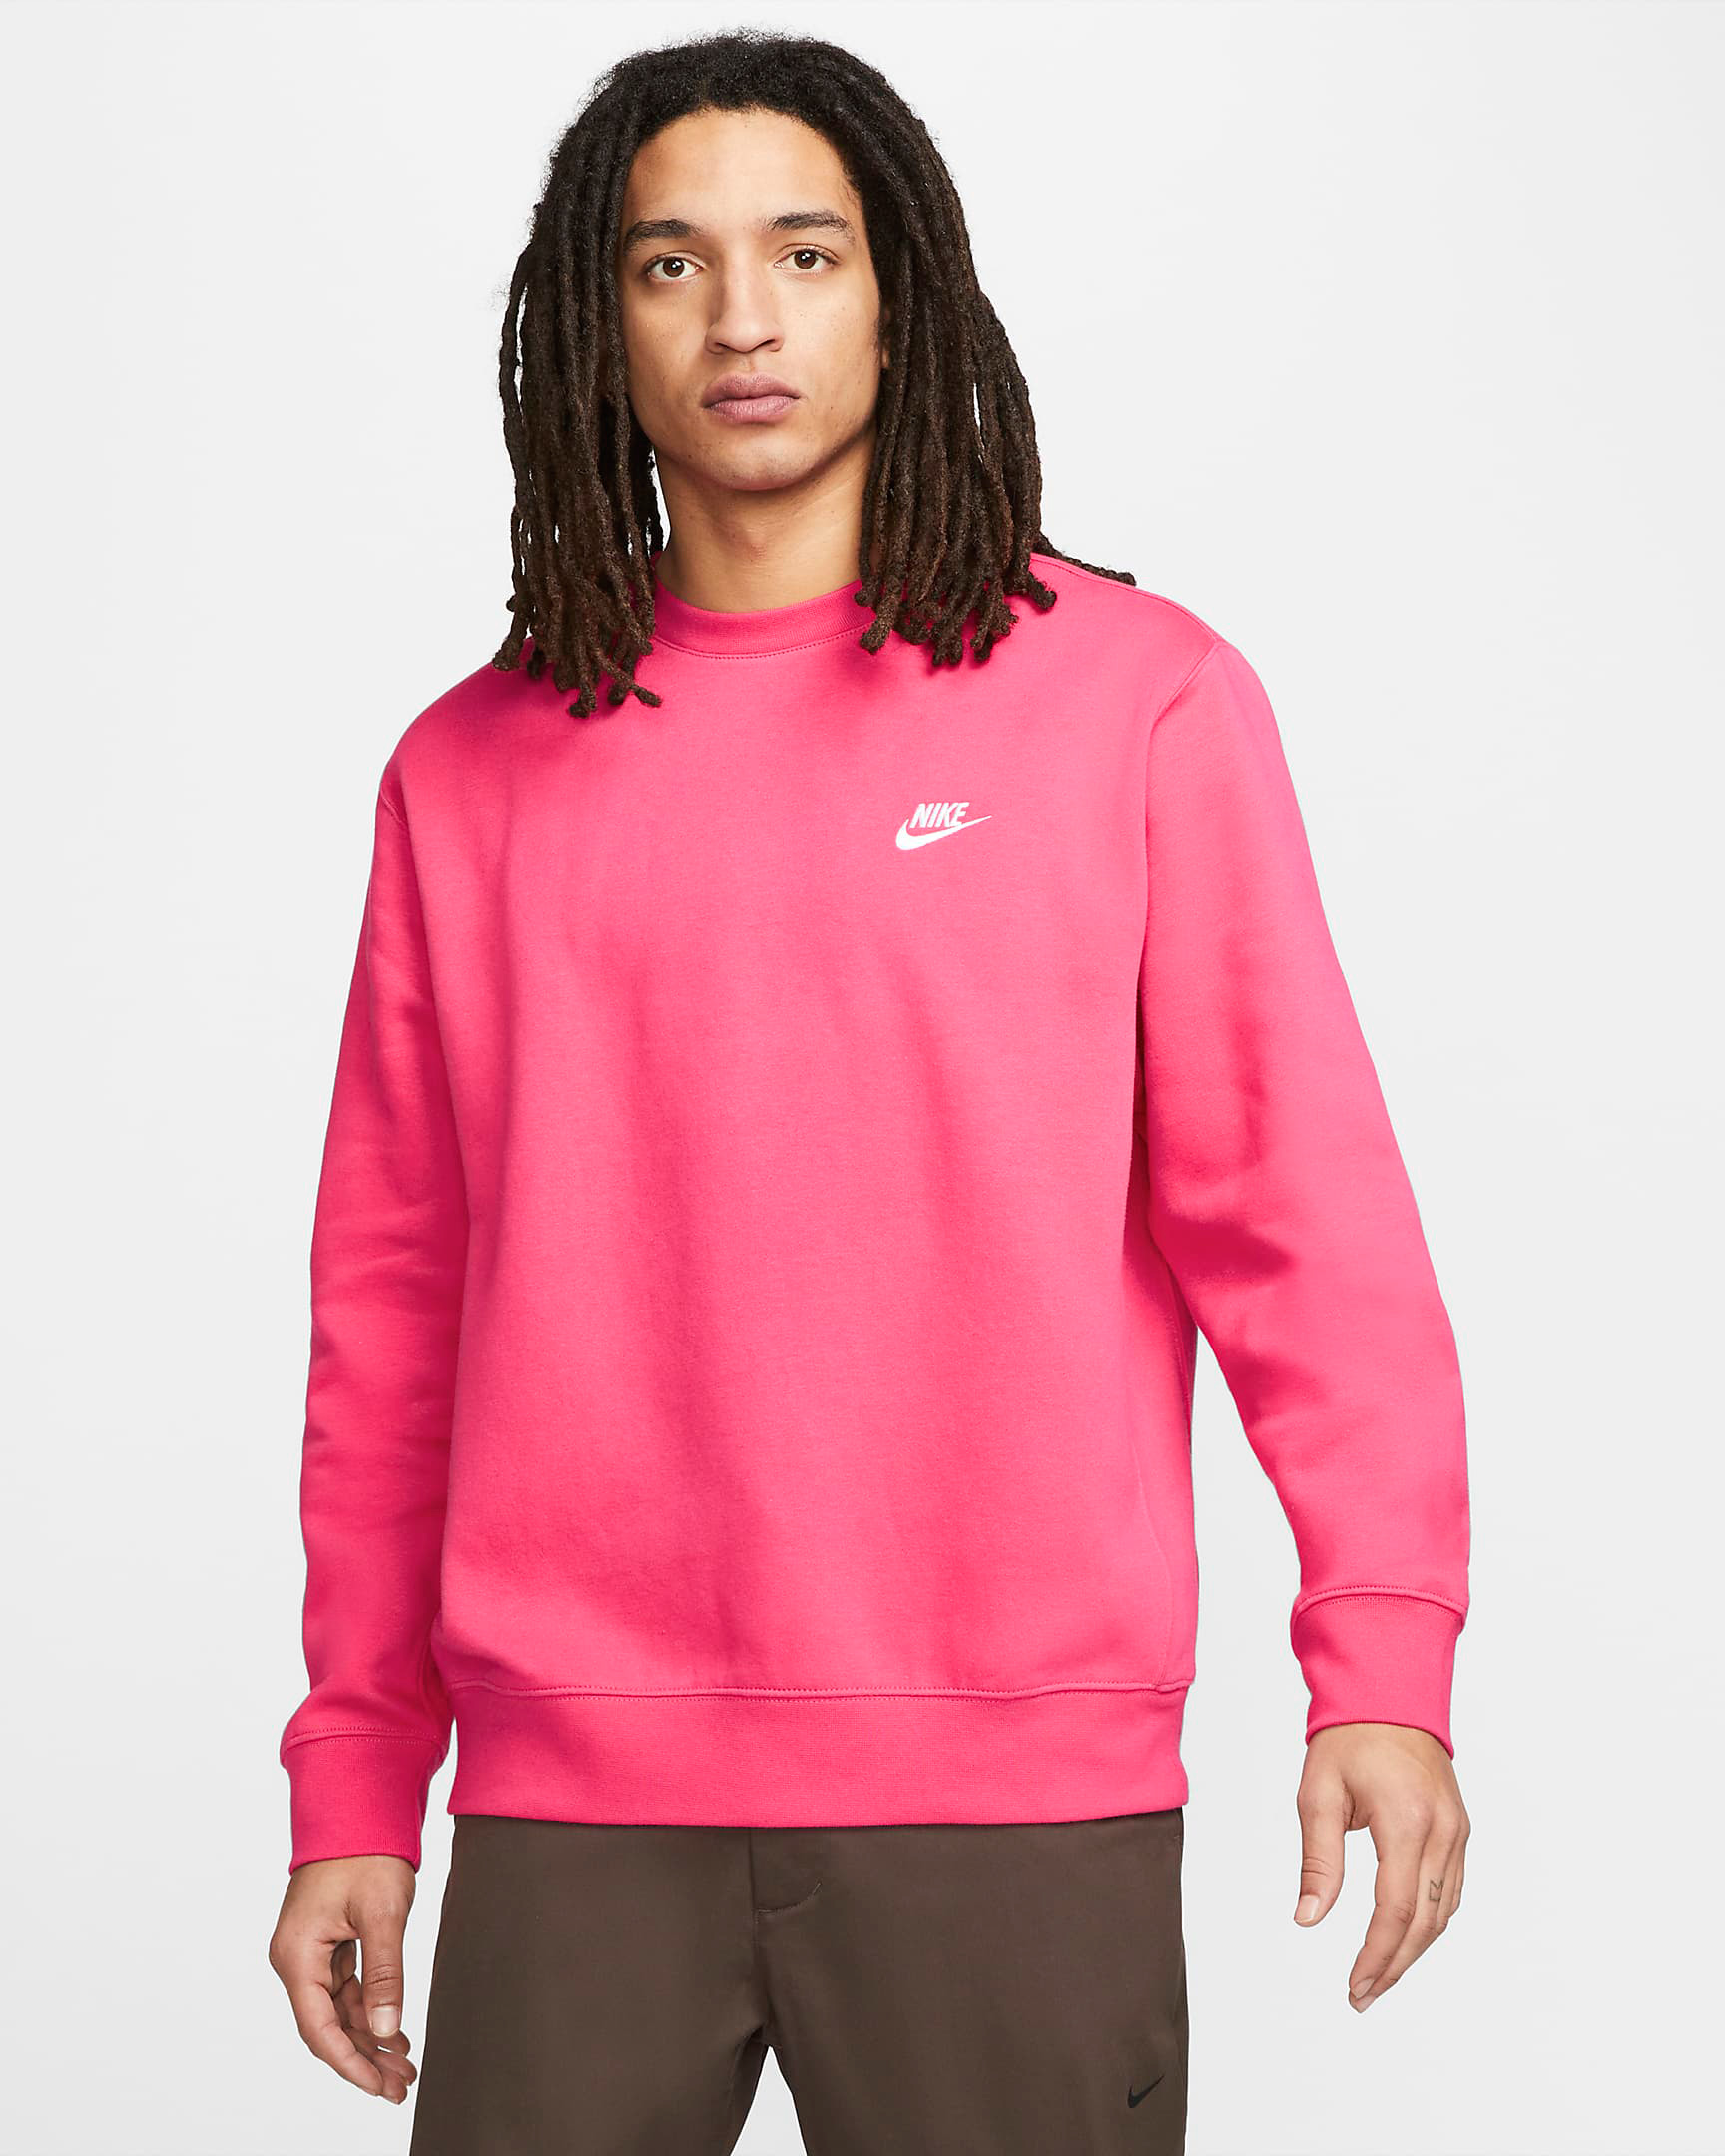 nike-club-fleece-crew-sweatshirt-rush-pink